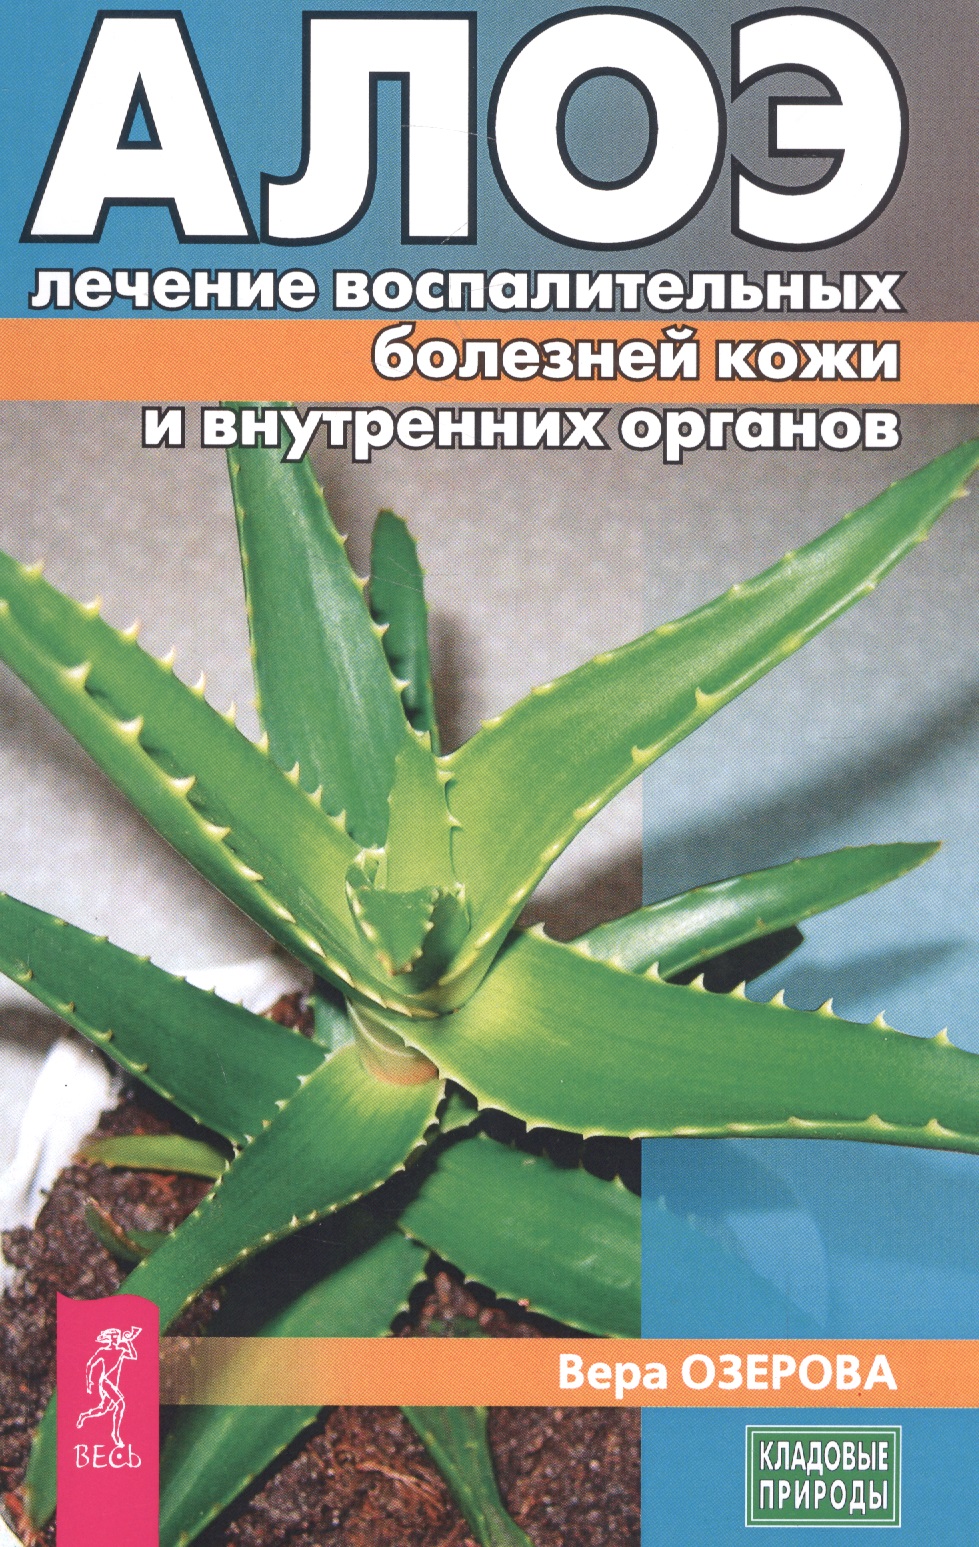 Озерова Вера - Алое: лечение воспалительных болезней кожи и внутренних органов (3187)